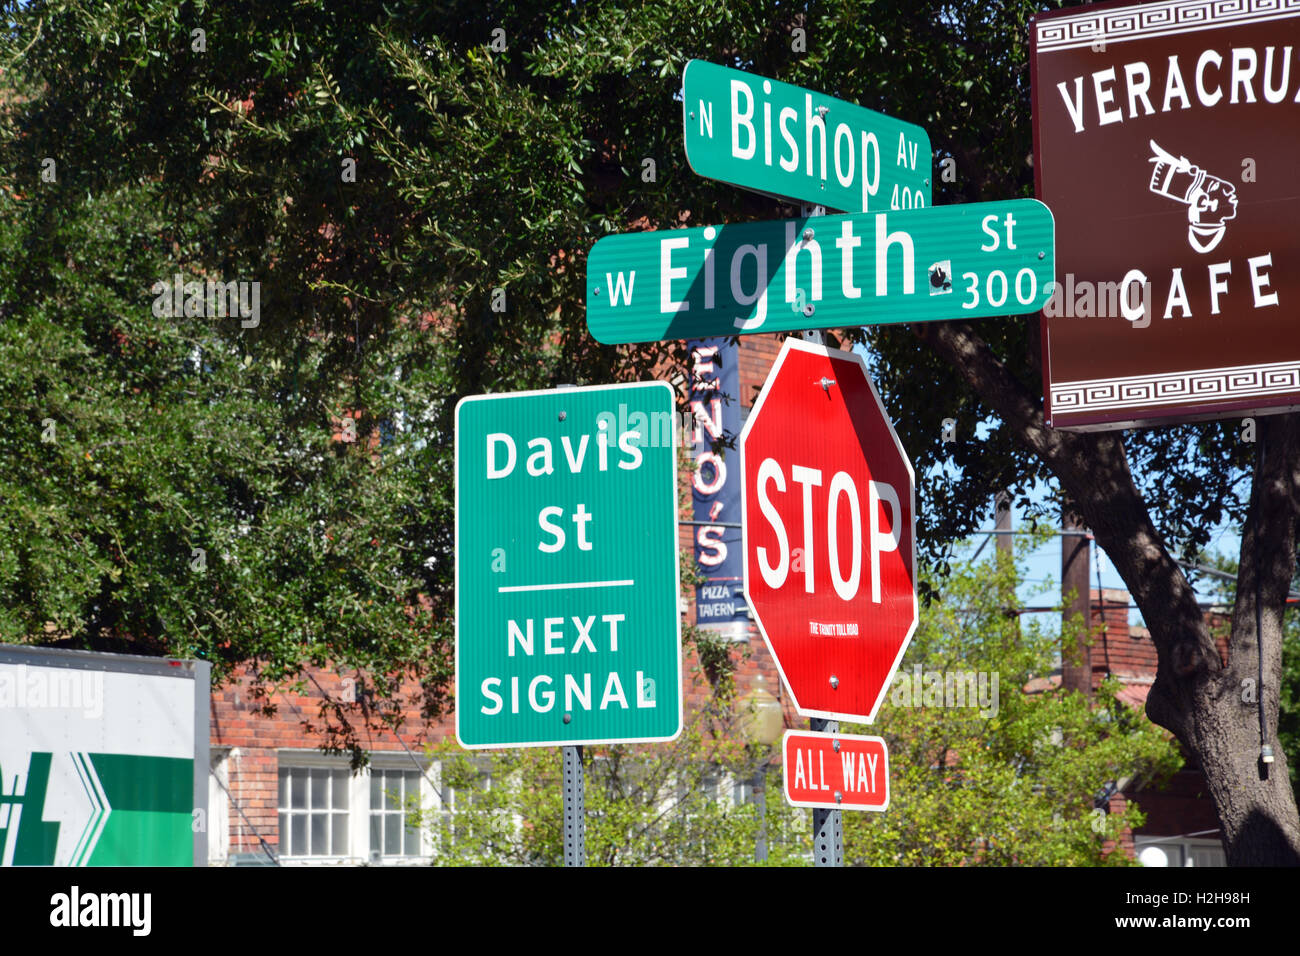 Indicazioni stradali al Vescovo e 8th, nel cuore del quartiere alla moda del Vescovo Arts District in rovere Cliff quartiere di Dallas, Texas. Foto Stock